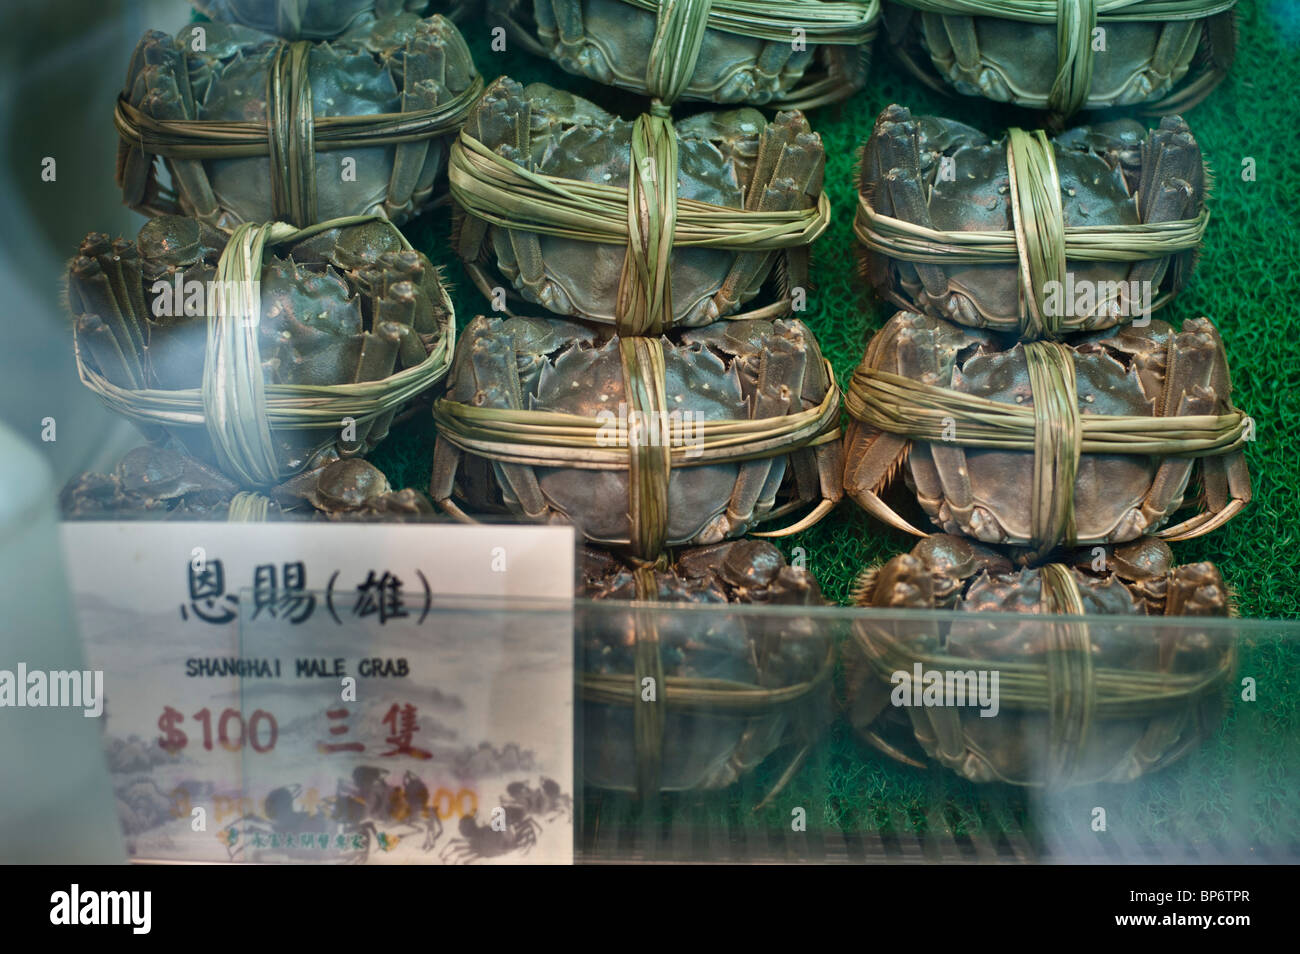 El cangrejo guante chino es un famoso manjar en Shanghai y Hong Kong cocina y es muy apreciado por las huevas de cangrejo hembra. Foto de stock